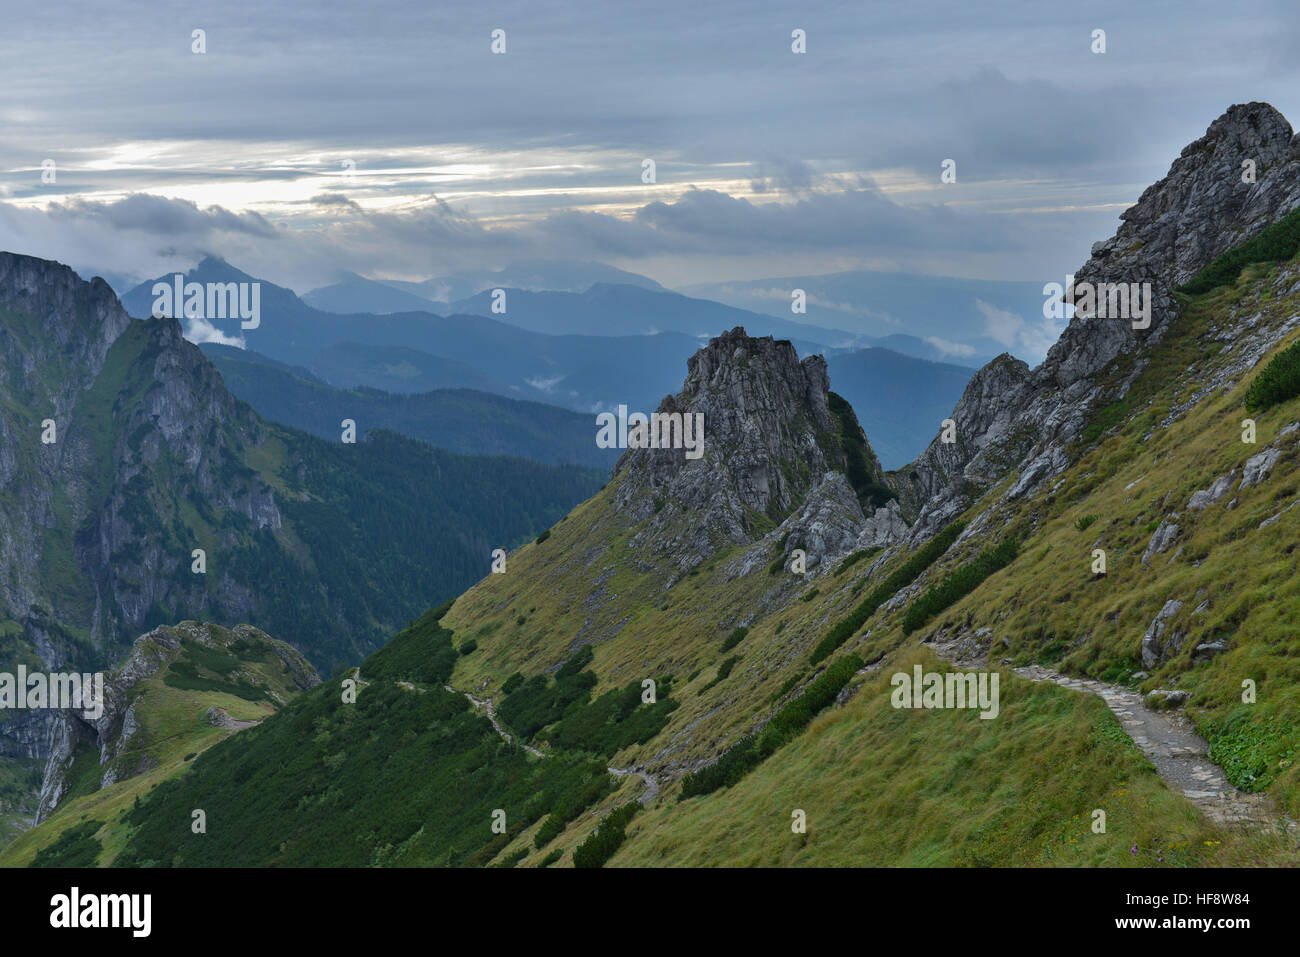 Roter westlicher Wanderweg zum Gipfel Hohe Giewont, Tatra, Polen, plus rouge Sentier de l'ouest du sommet, Giewont les Hautes Tatras, poteaux Banque D'Images